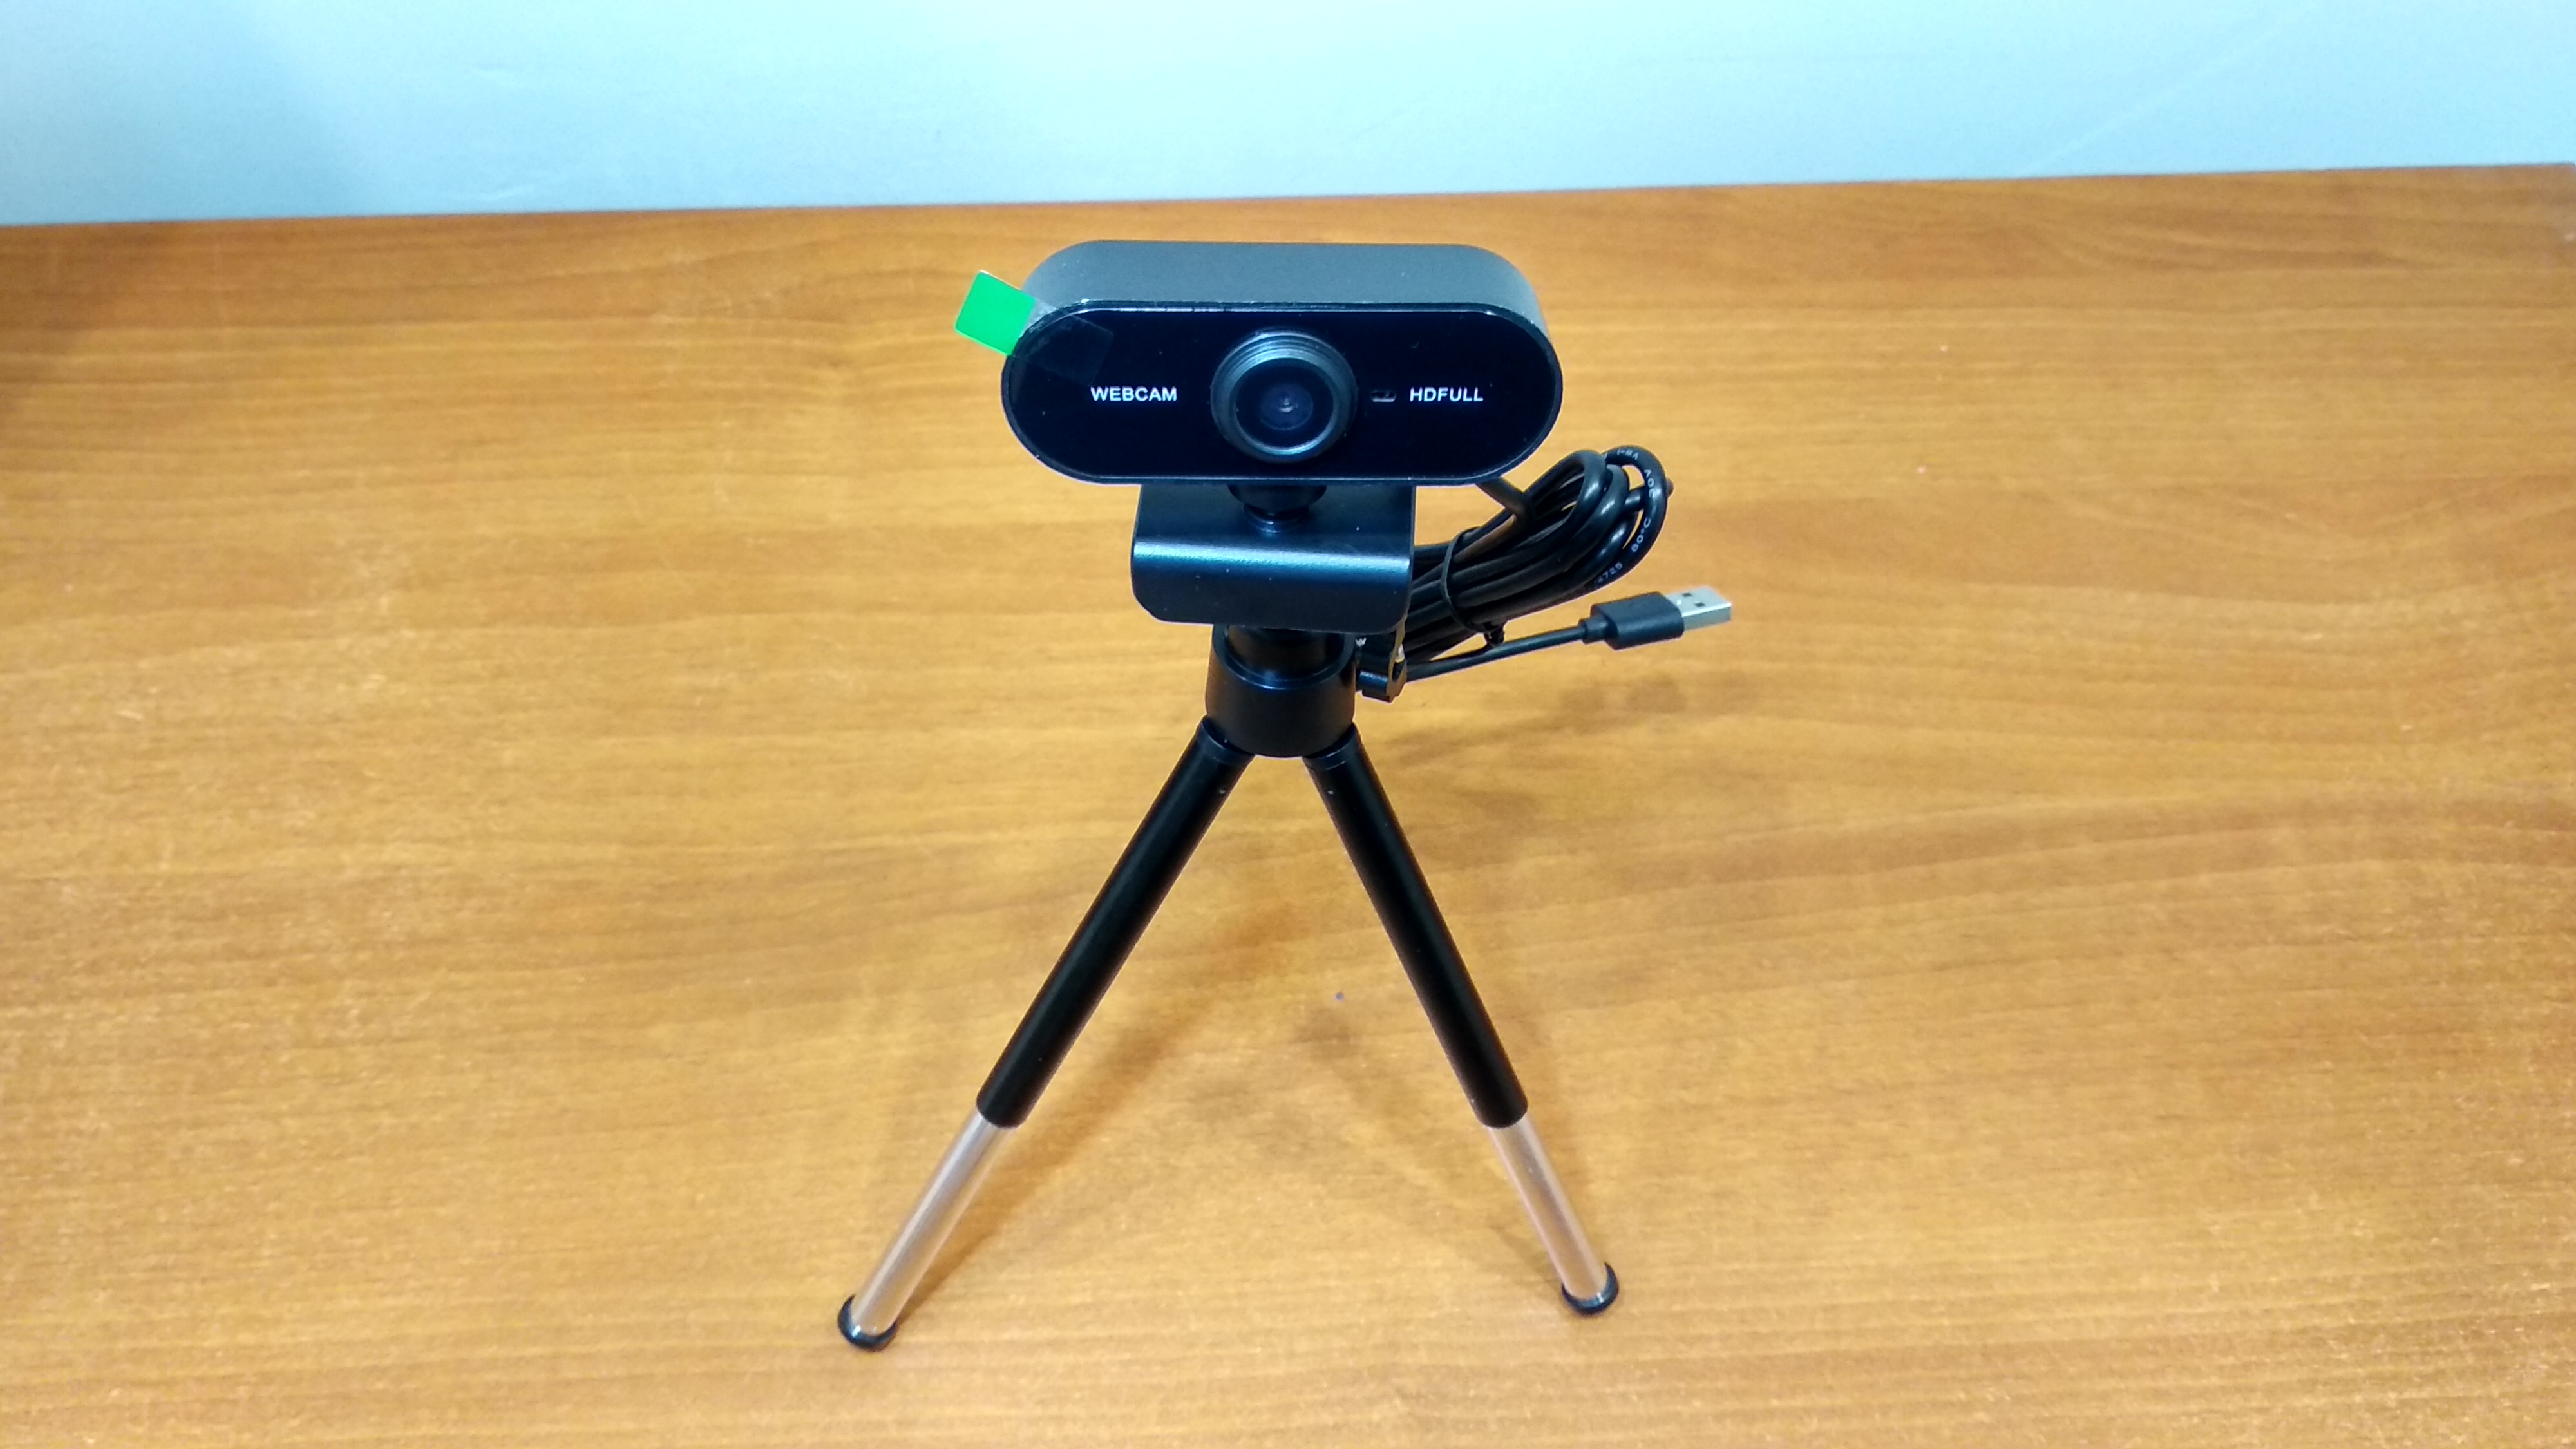 Камеры видеонаблюдения Dahua